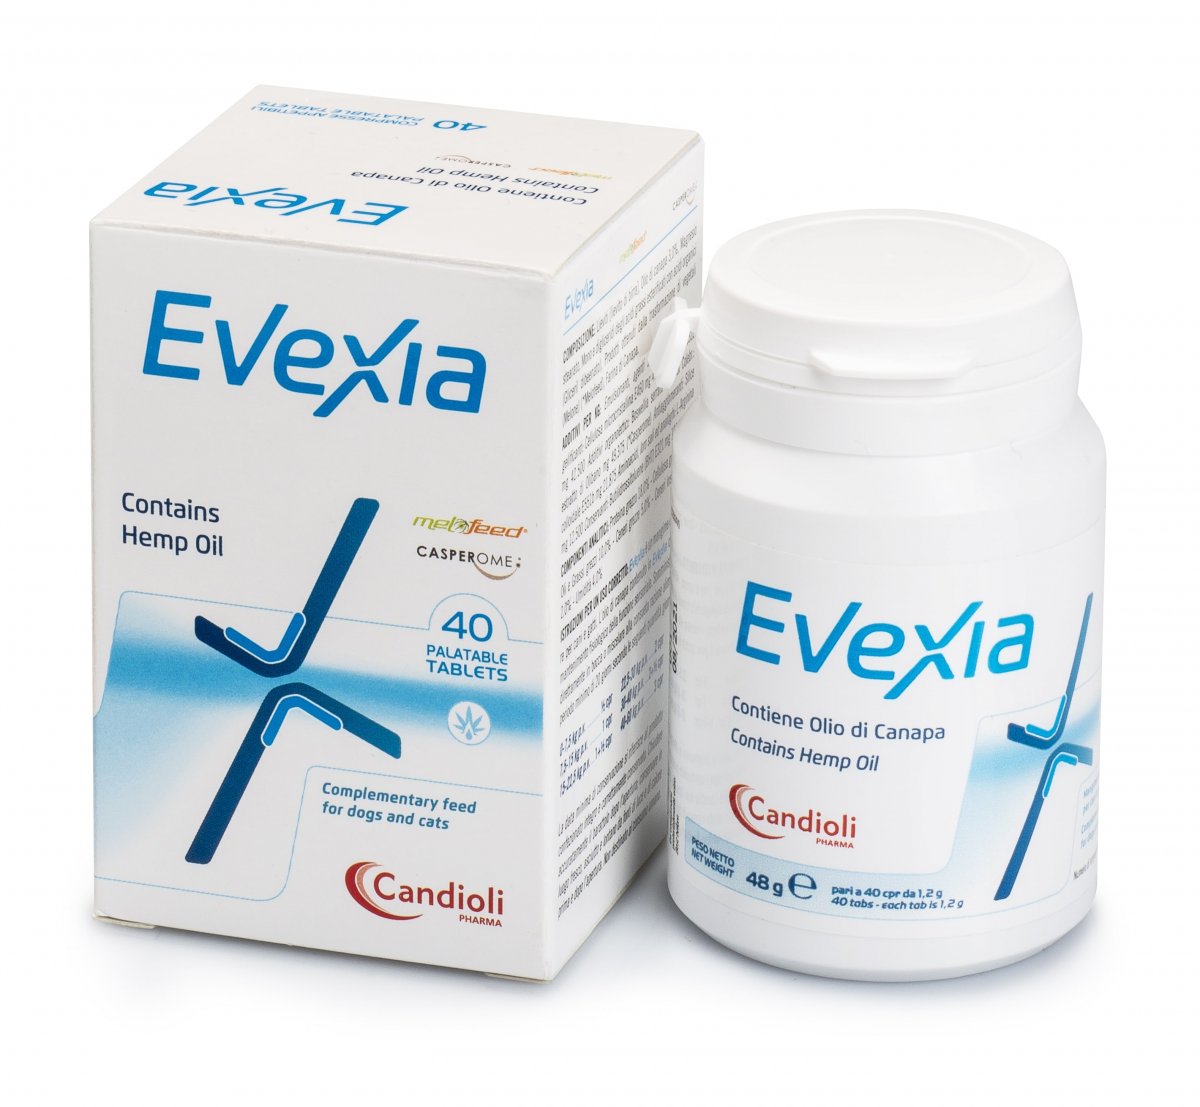 Evexia contains hemp oil